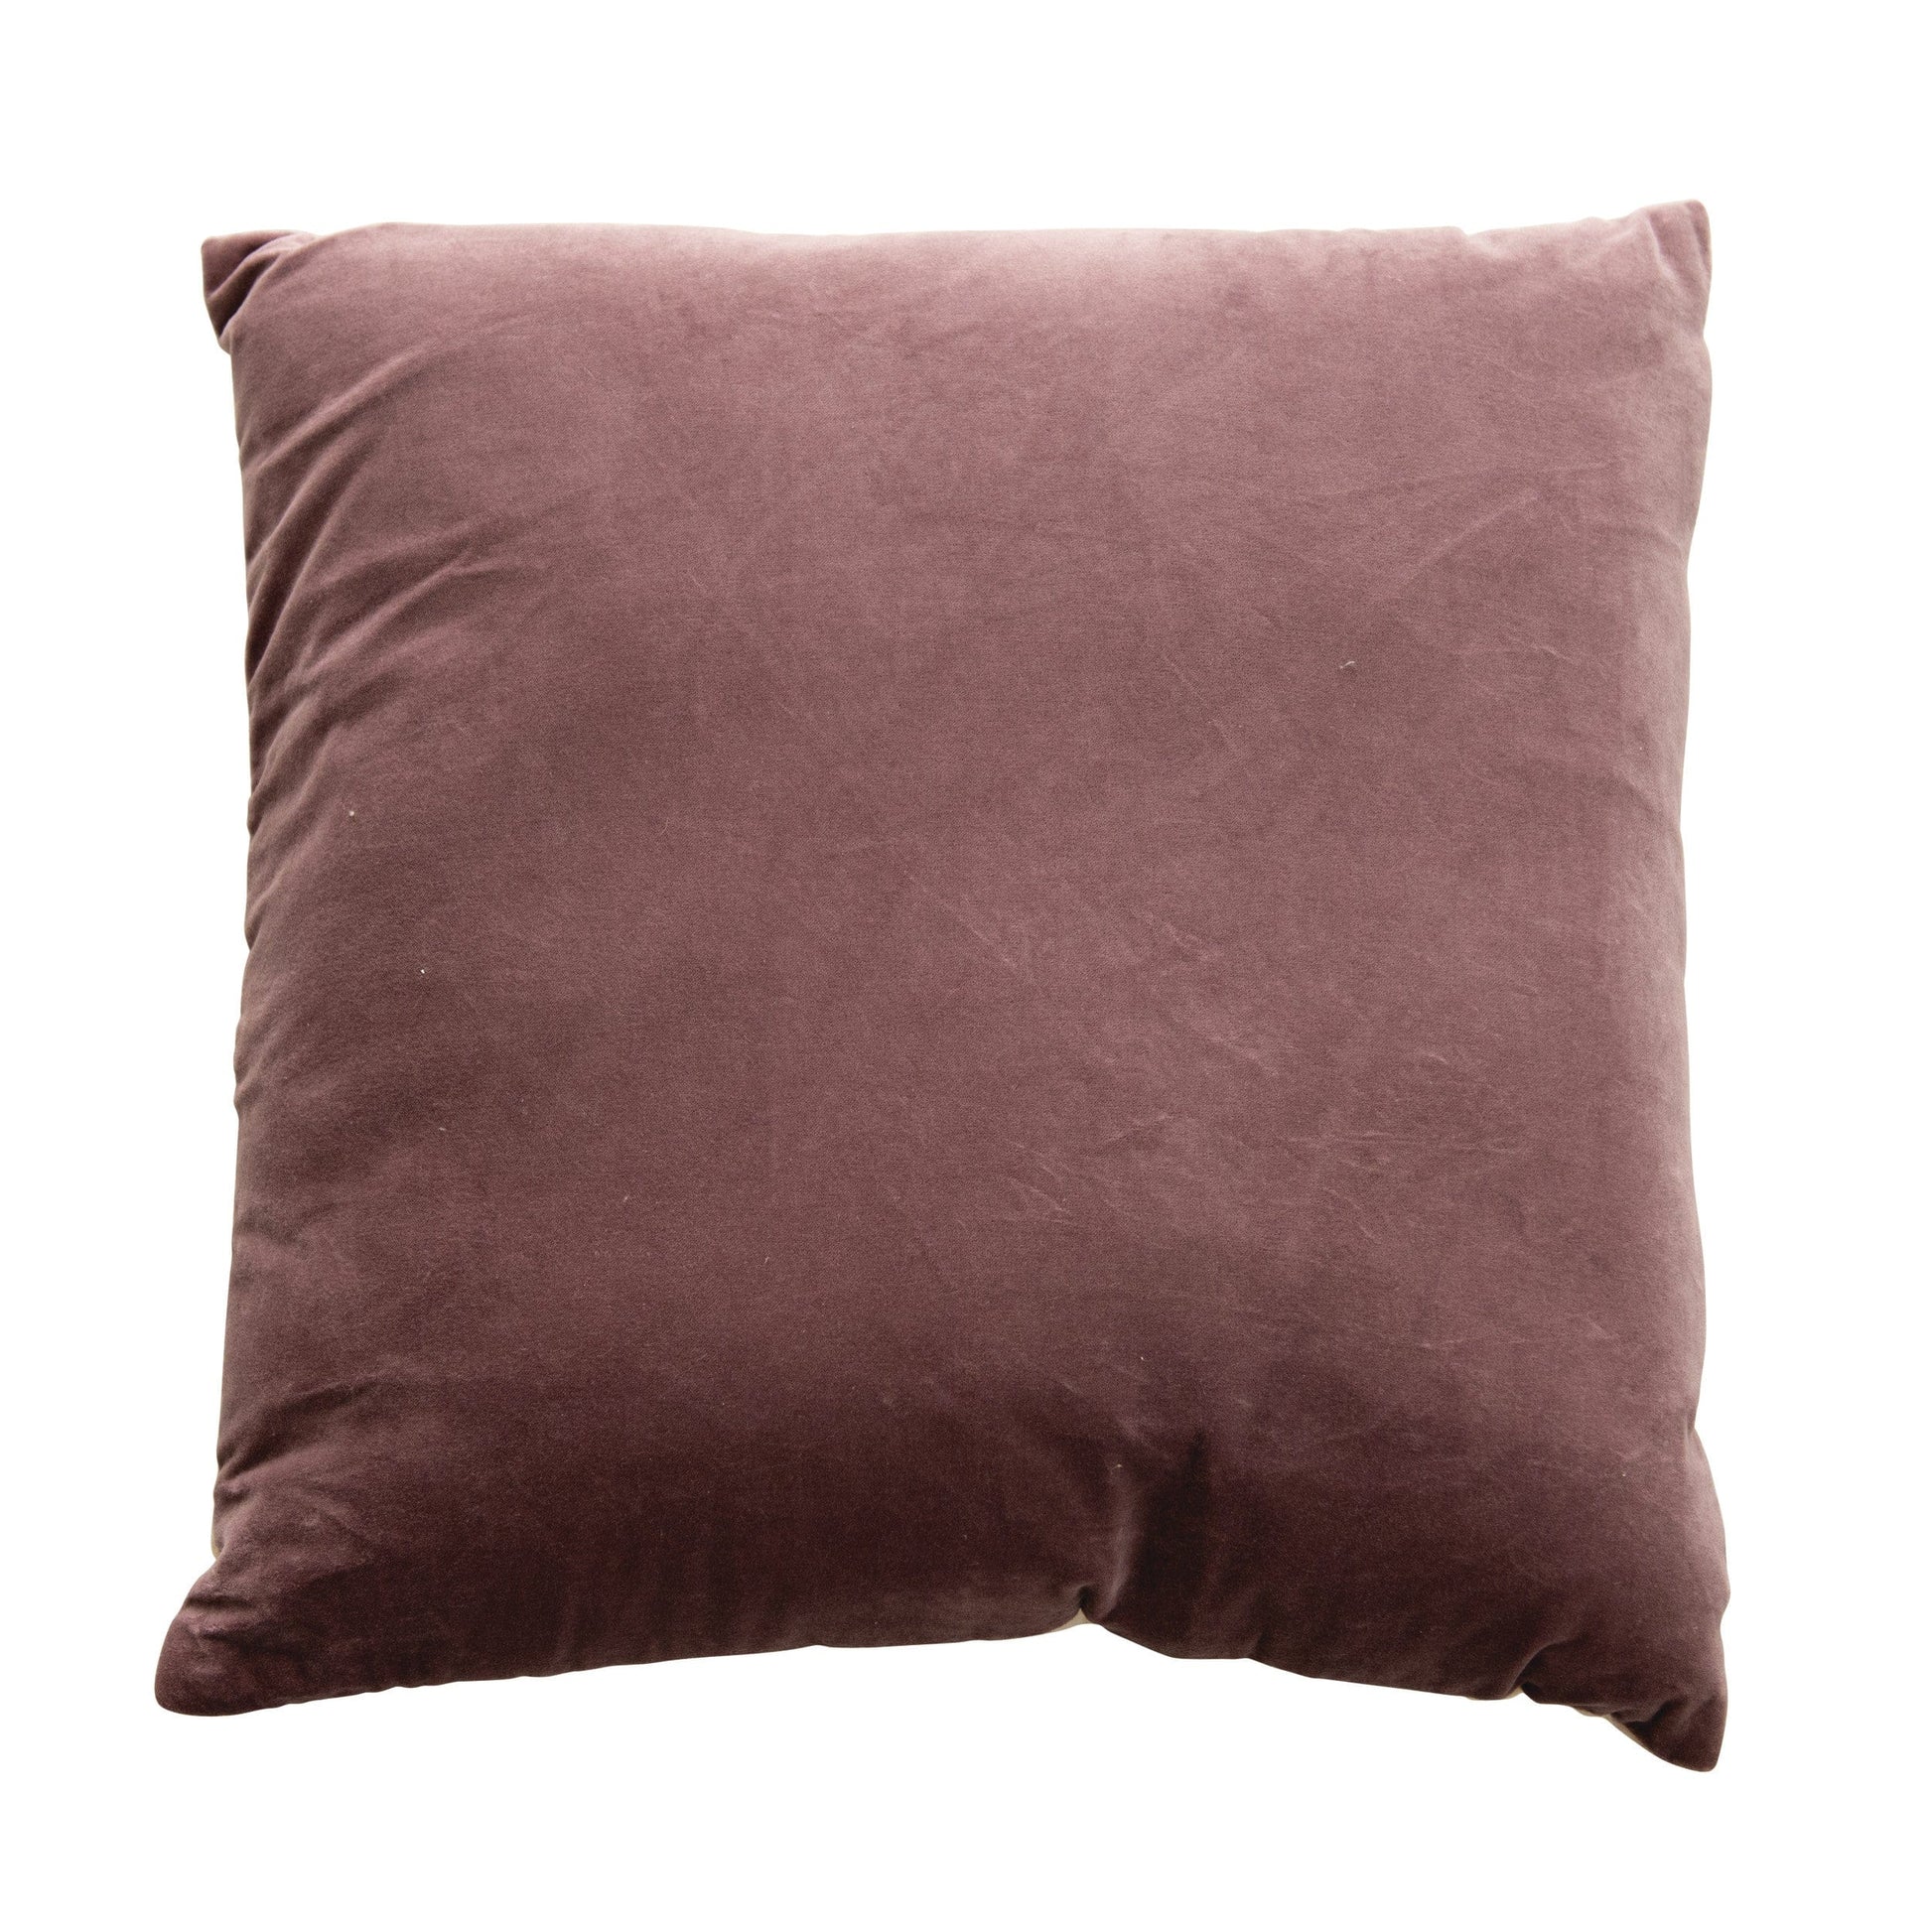 Lavender Cotton Velvet Pillow - Five and Divine